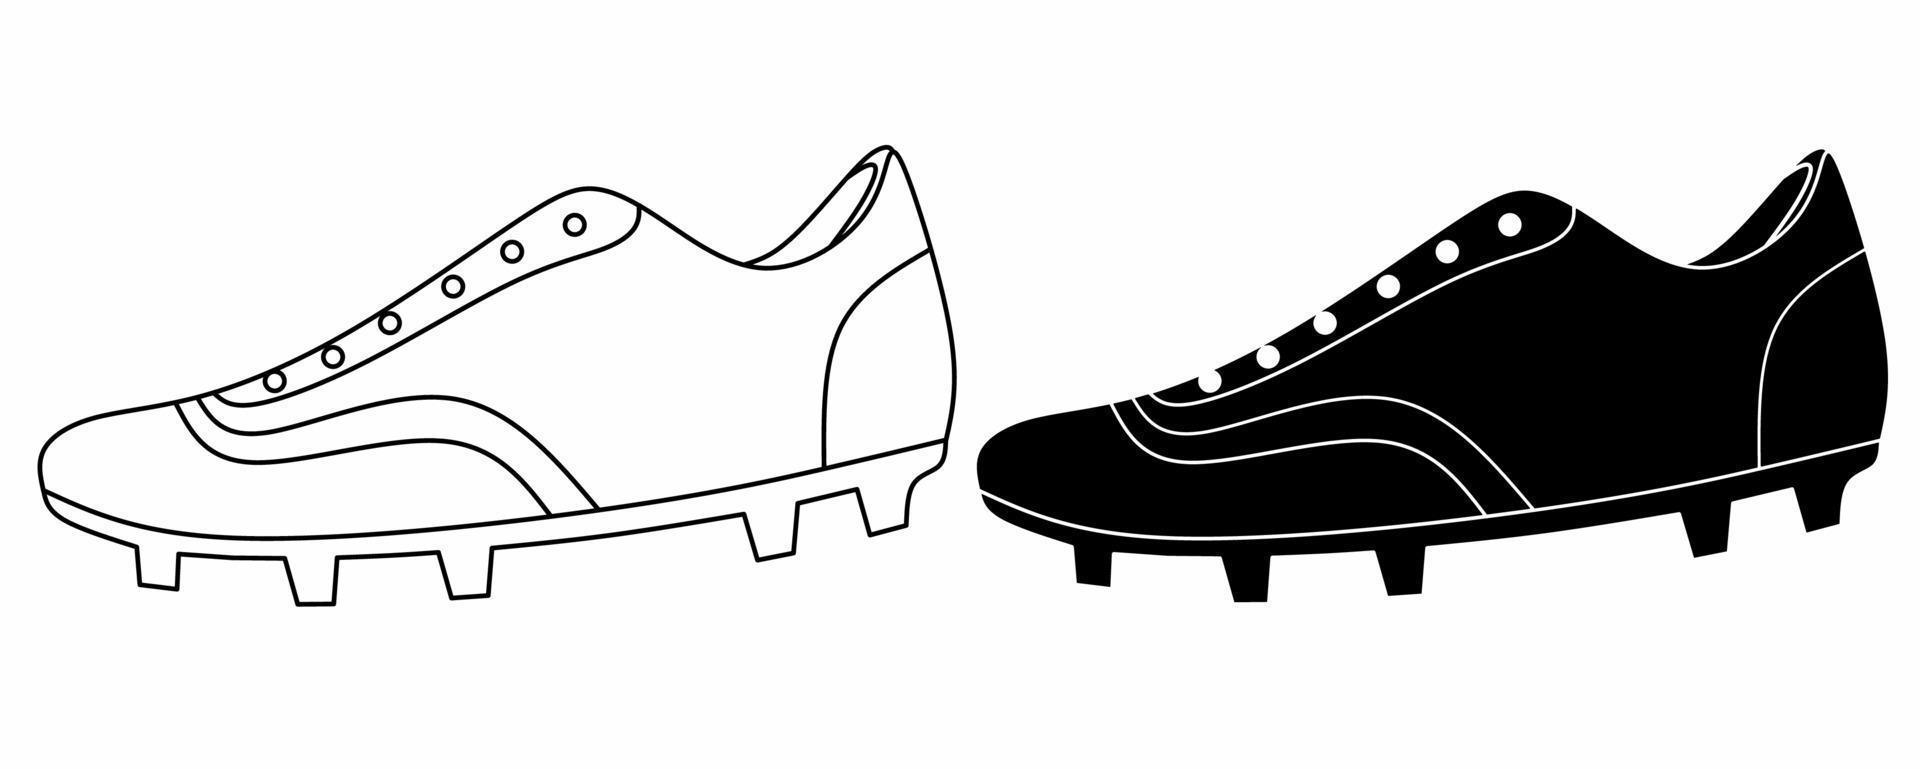 contours silhouette football chaussures icon set isolé sur fond blanc vecteur